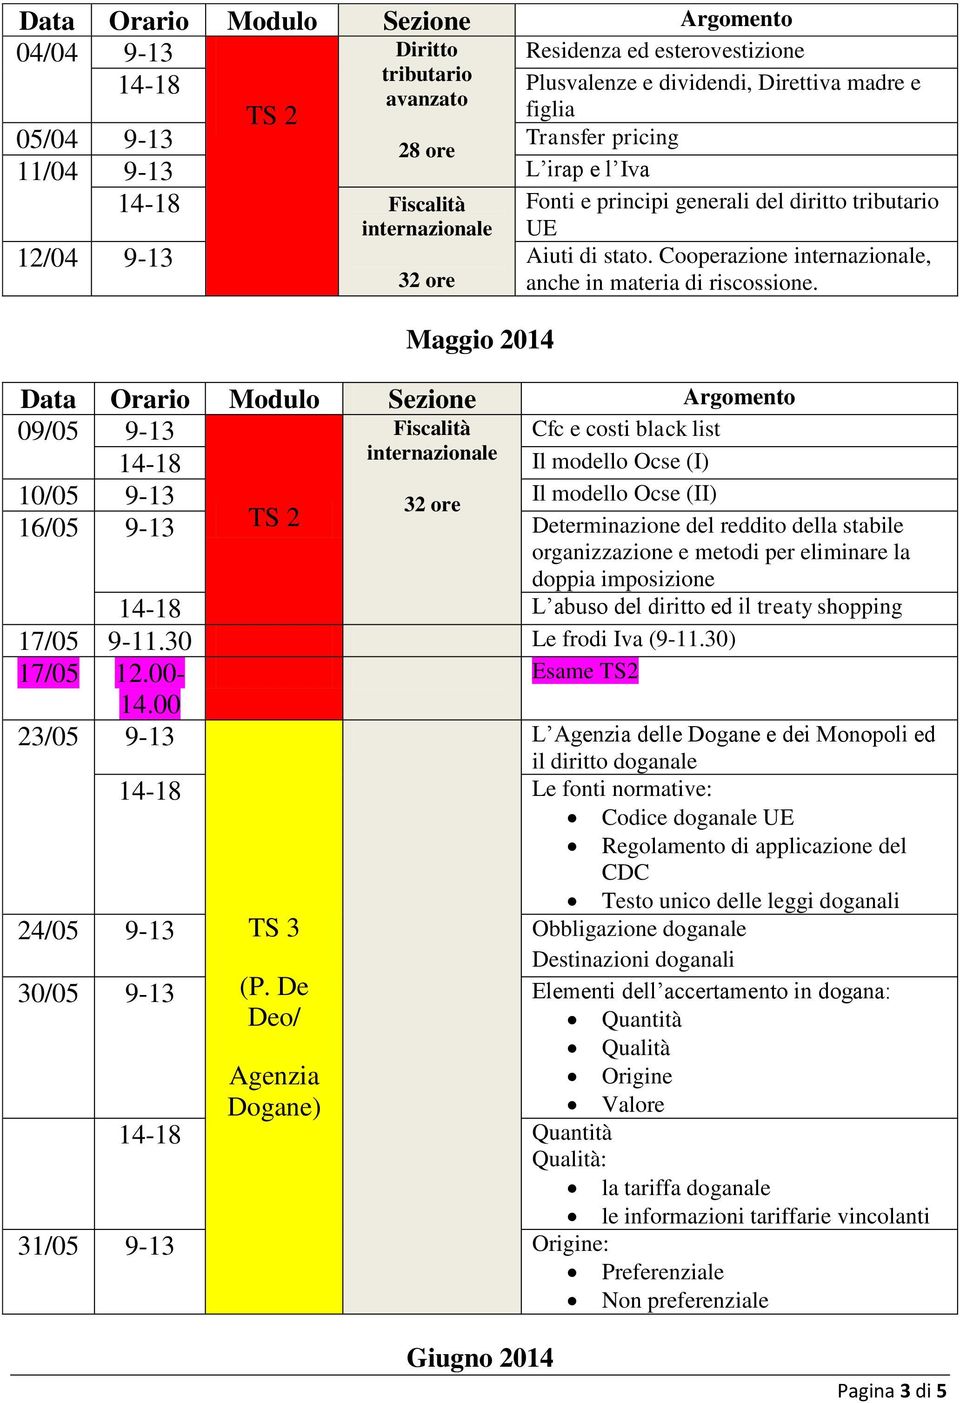 Data Orario Modulo Sezione Argomento 09/05 9-13 Fiscalità Cfc e costi black list 14-18 Il modello Ocse (I) 10/05 9-13 32 ore Il modello Ocse (II) 16/05 9-13 TS 2 Determinazione del reddito della